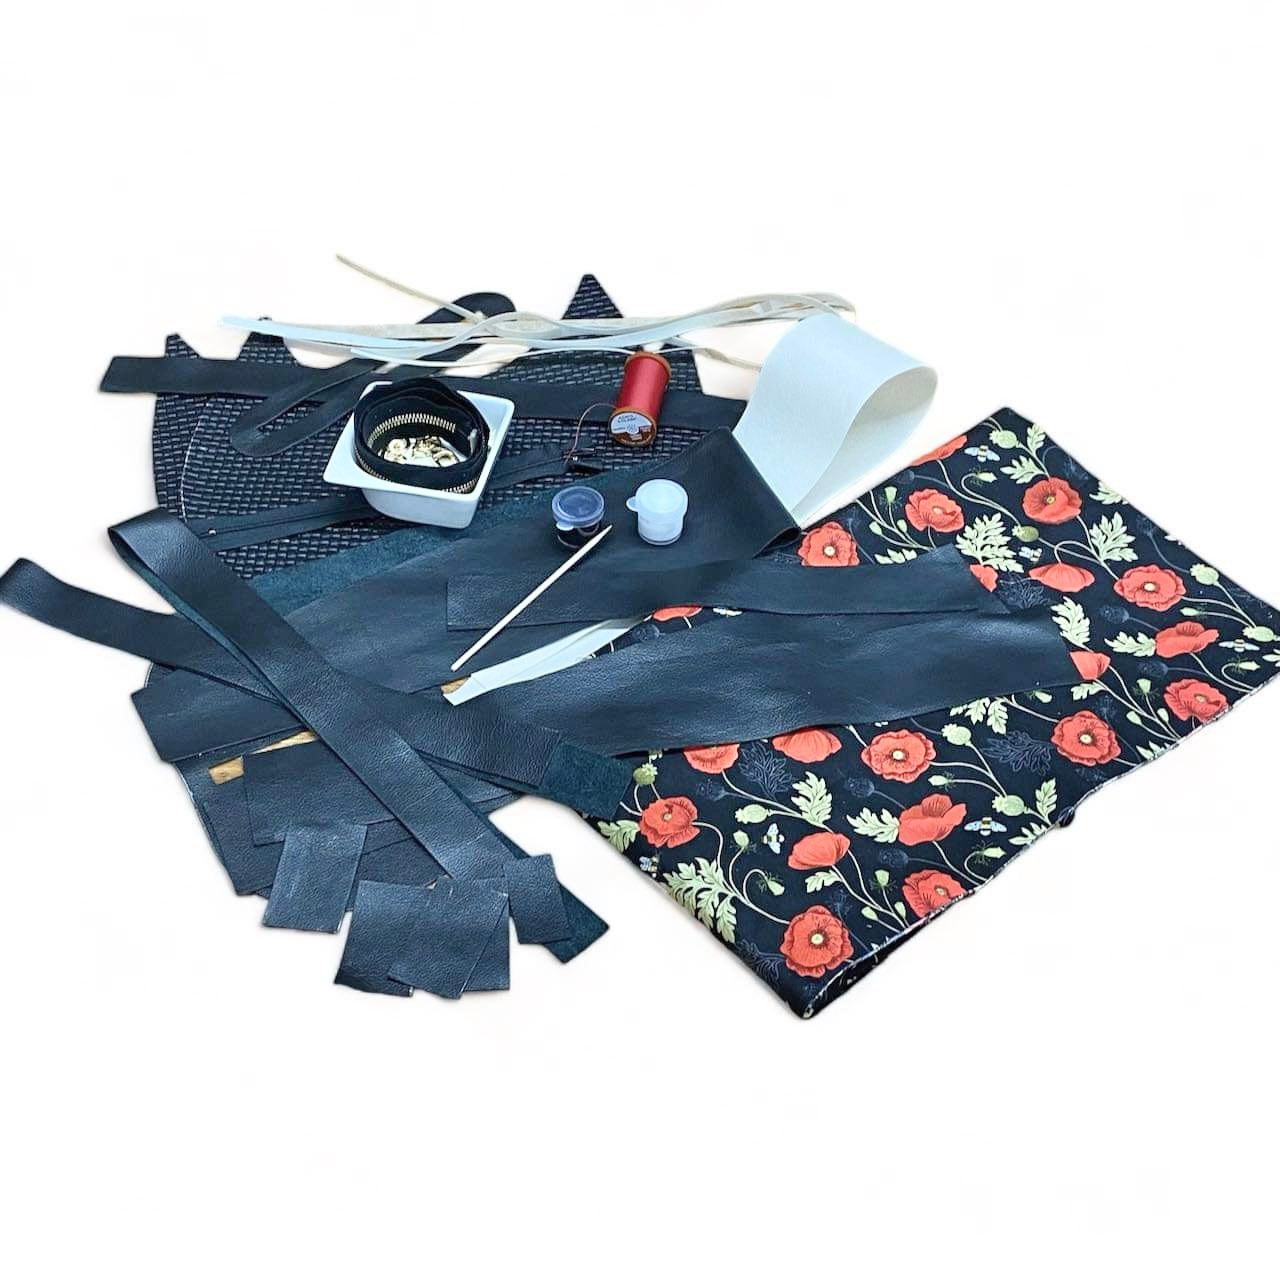 Makers Retreat Kits- Duchess Shoulder Bag